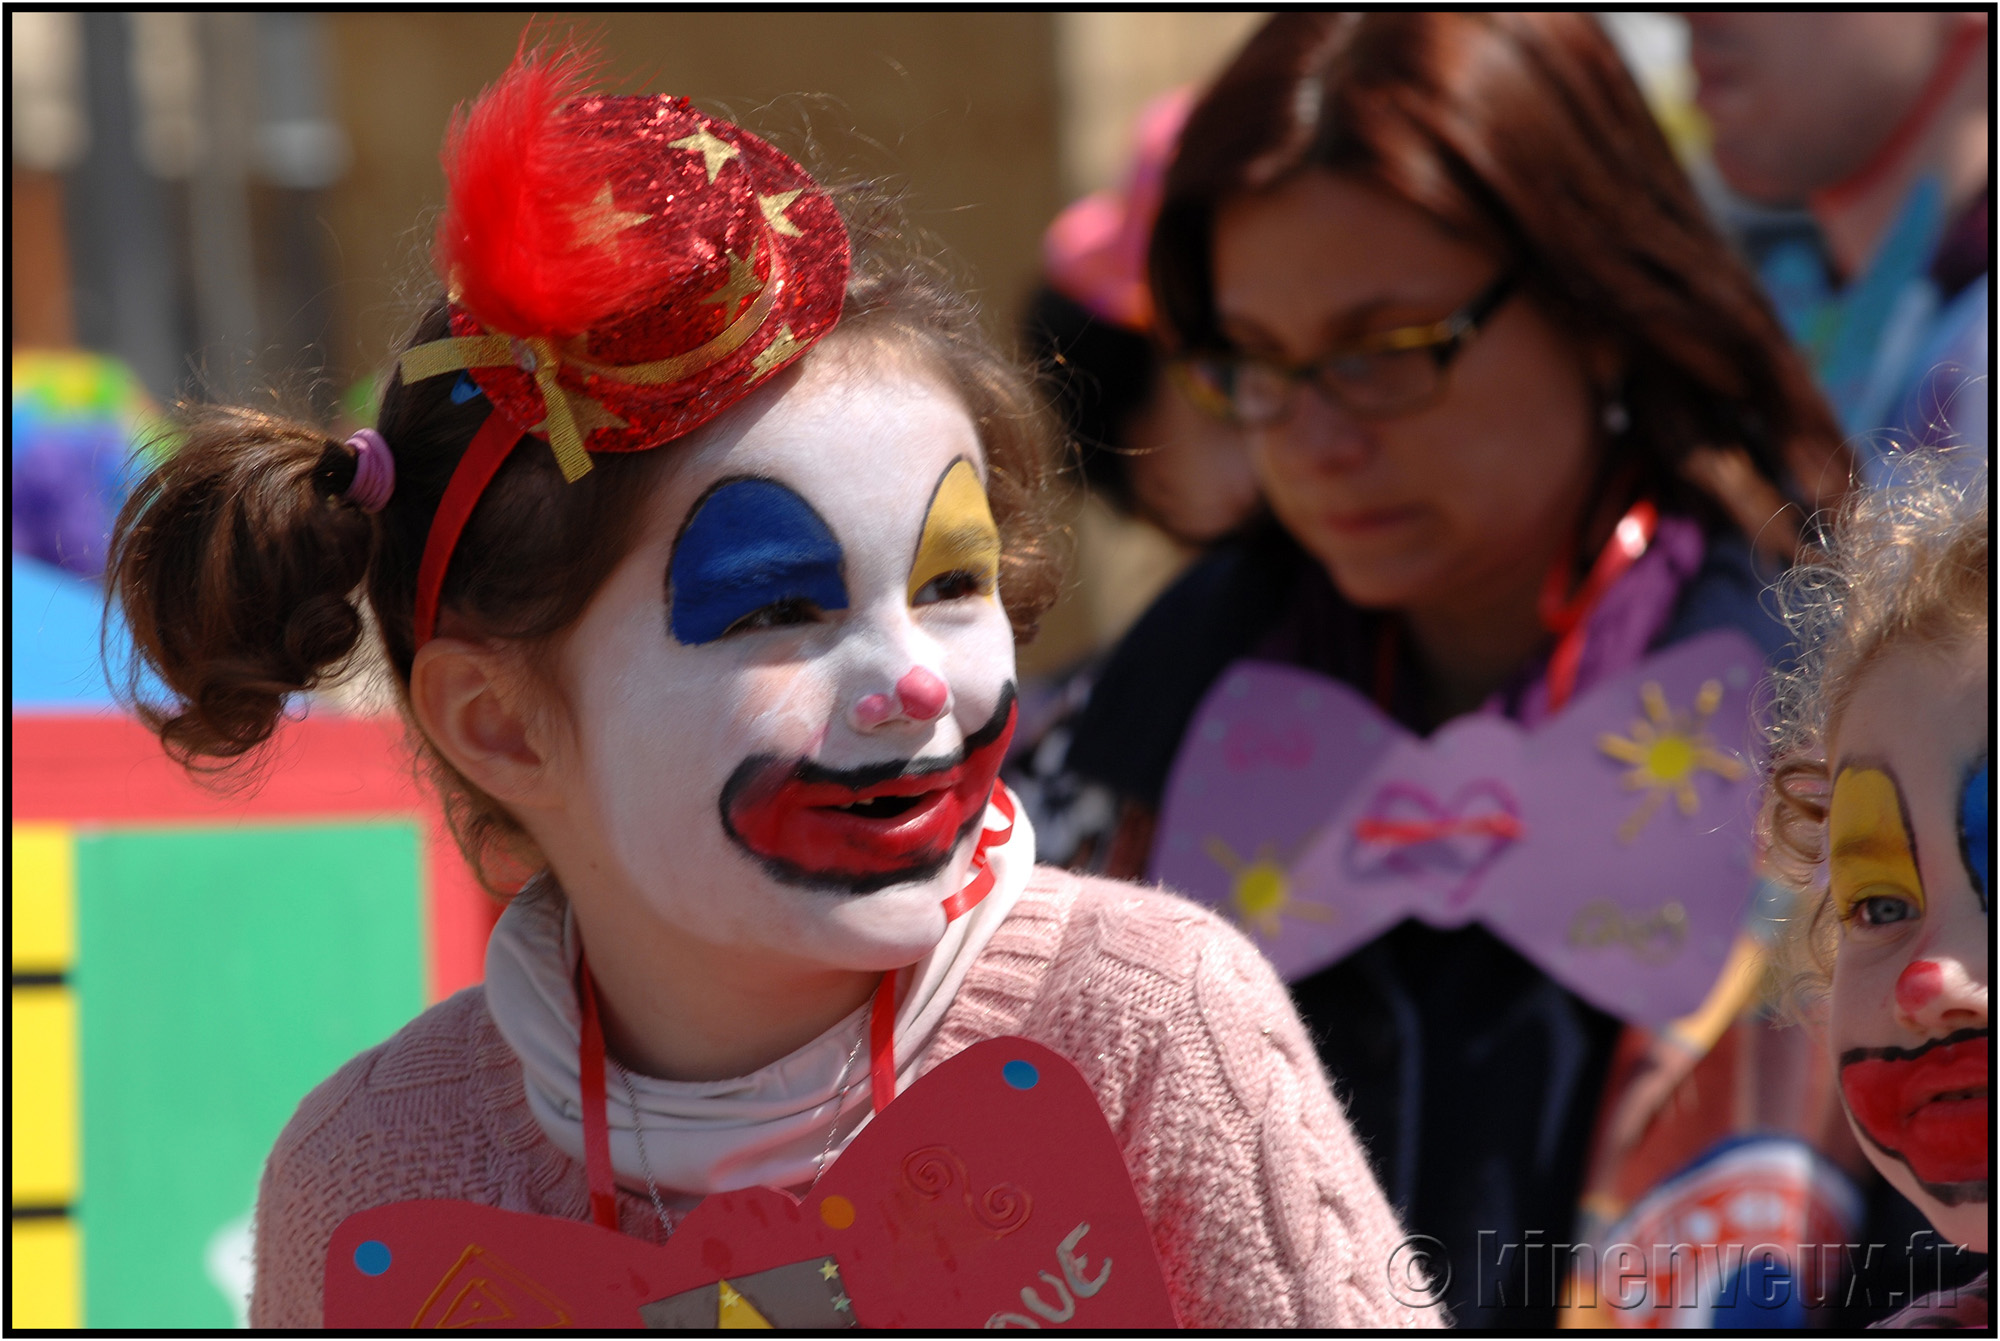 kinenveux_09_carnaval2015lr.jpg - Carnaval des Enfants 2015 - La Rochelle